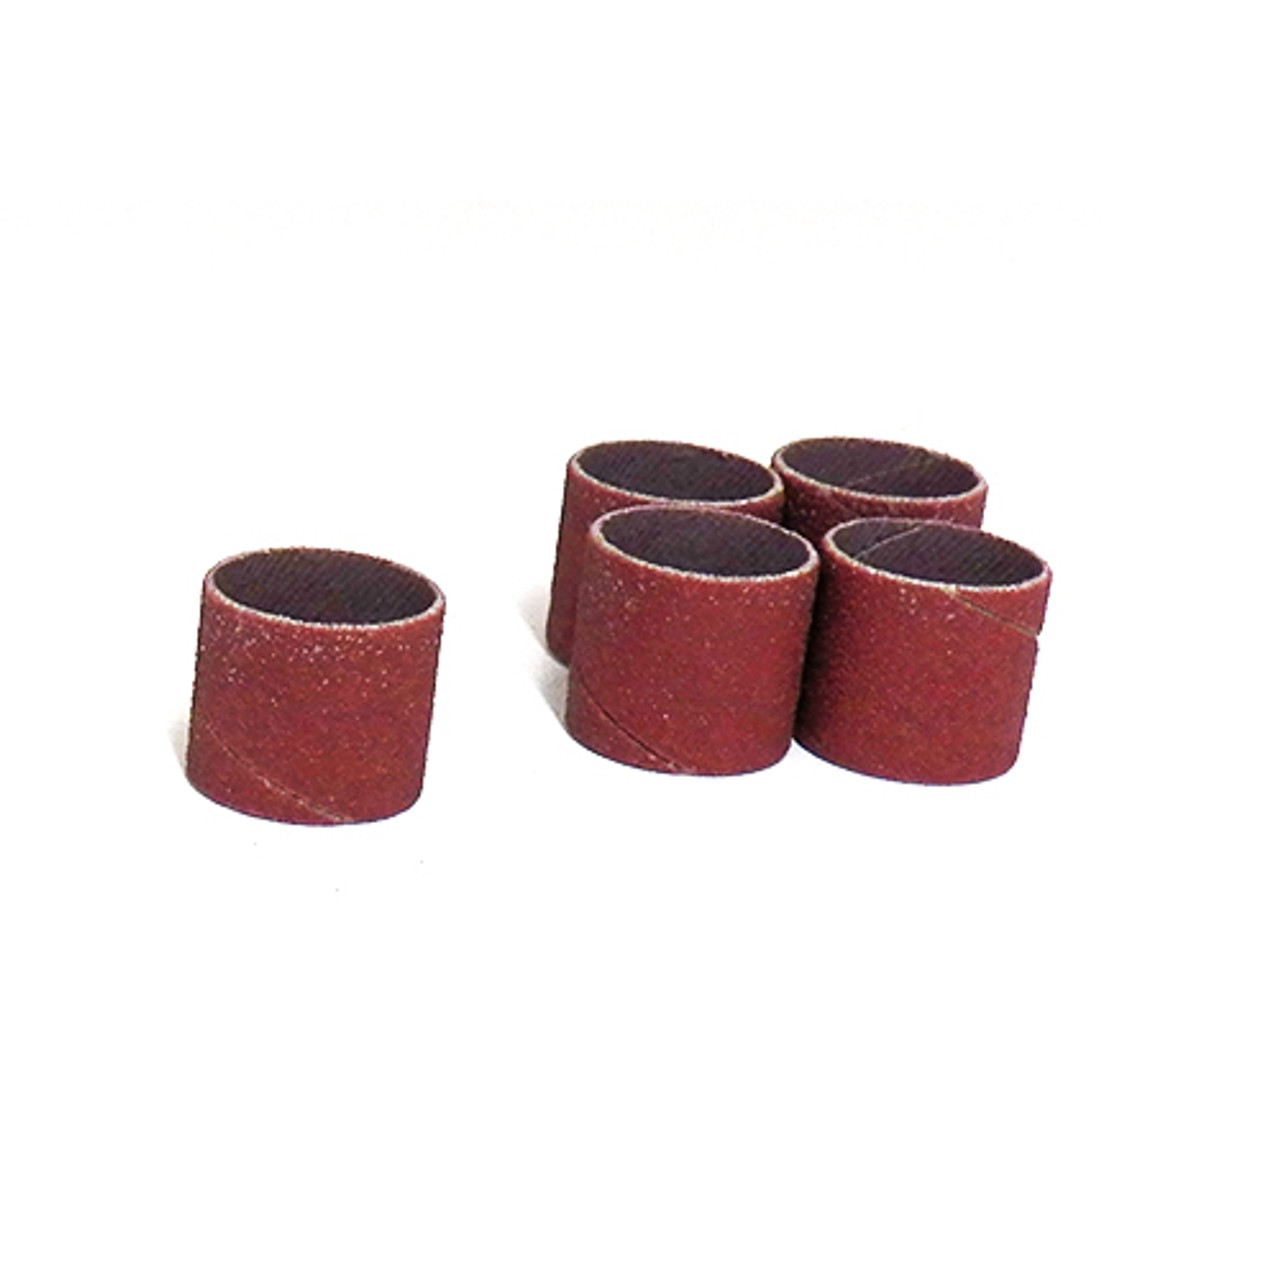 Klingspor Abrasives Aluminum Oxide Sanding Sleeves, 3/4"x 3/4" 60 Grit, 5pk